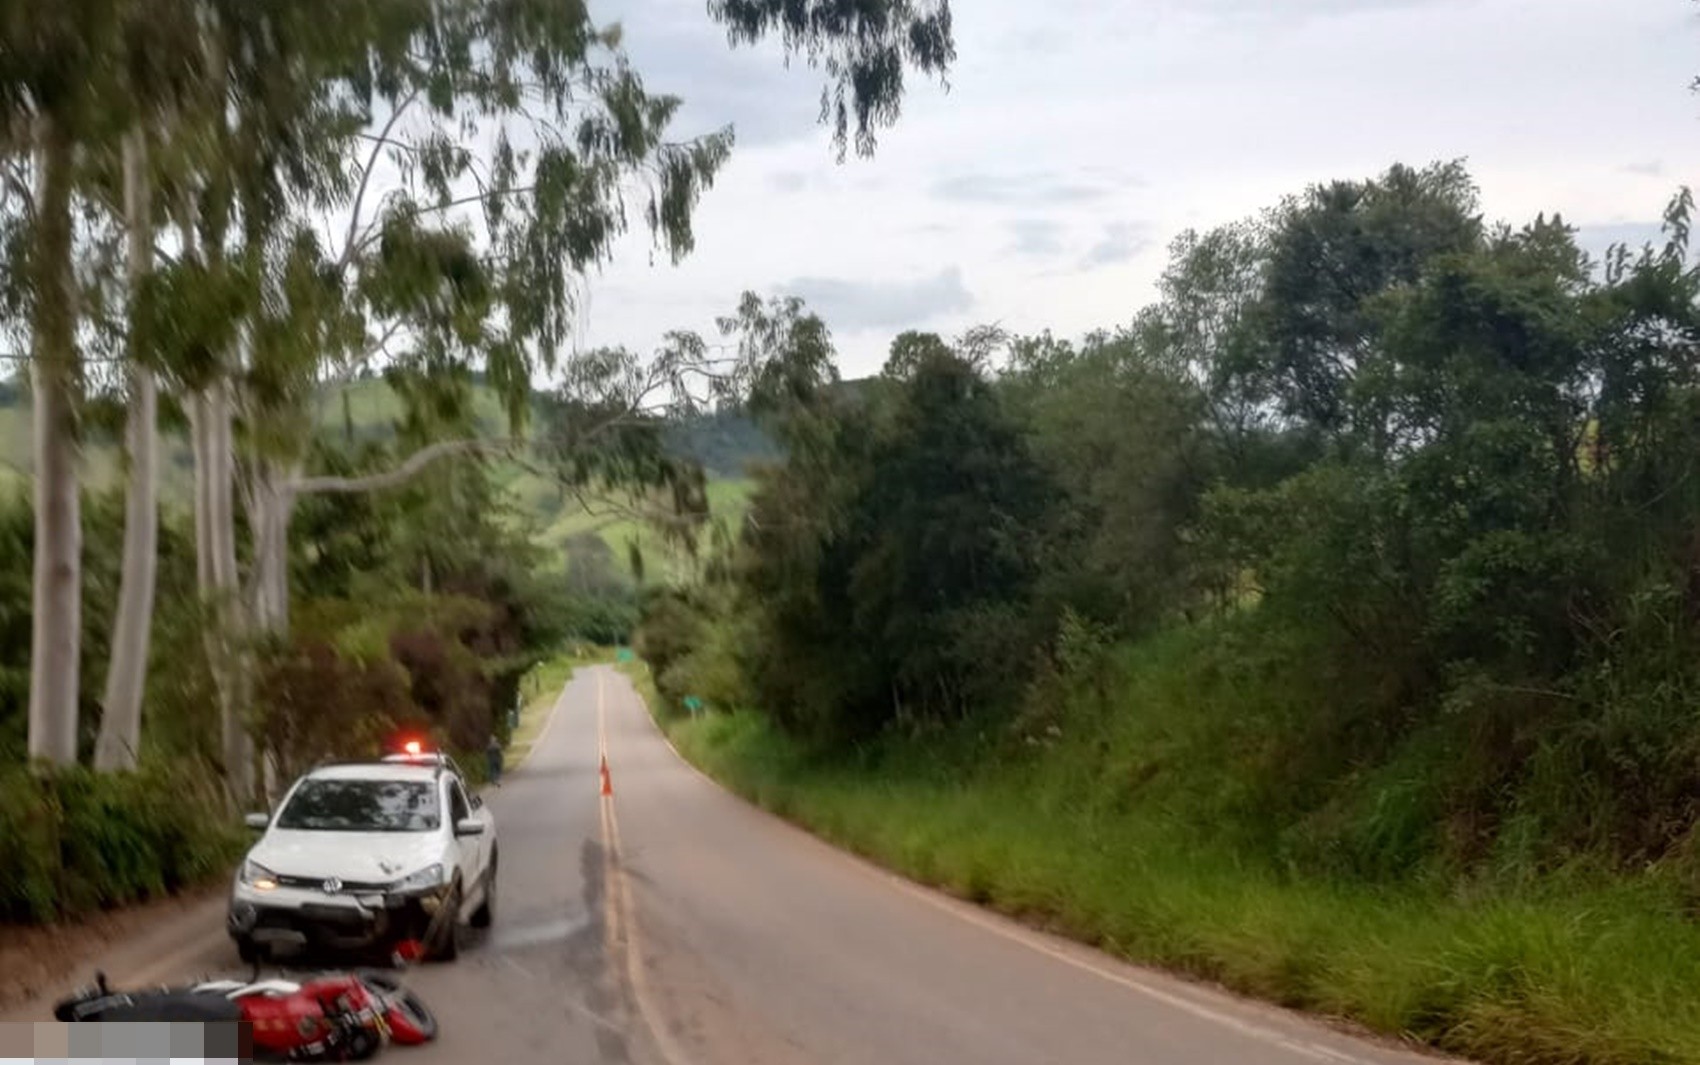 Motociclista morre após bater de frente como caminhonete na LMG-883, em Carmo de Minas, MG